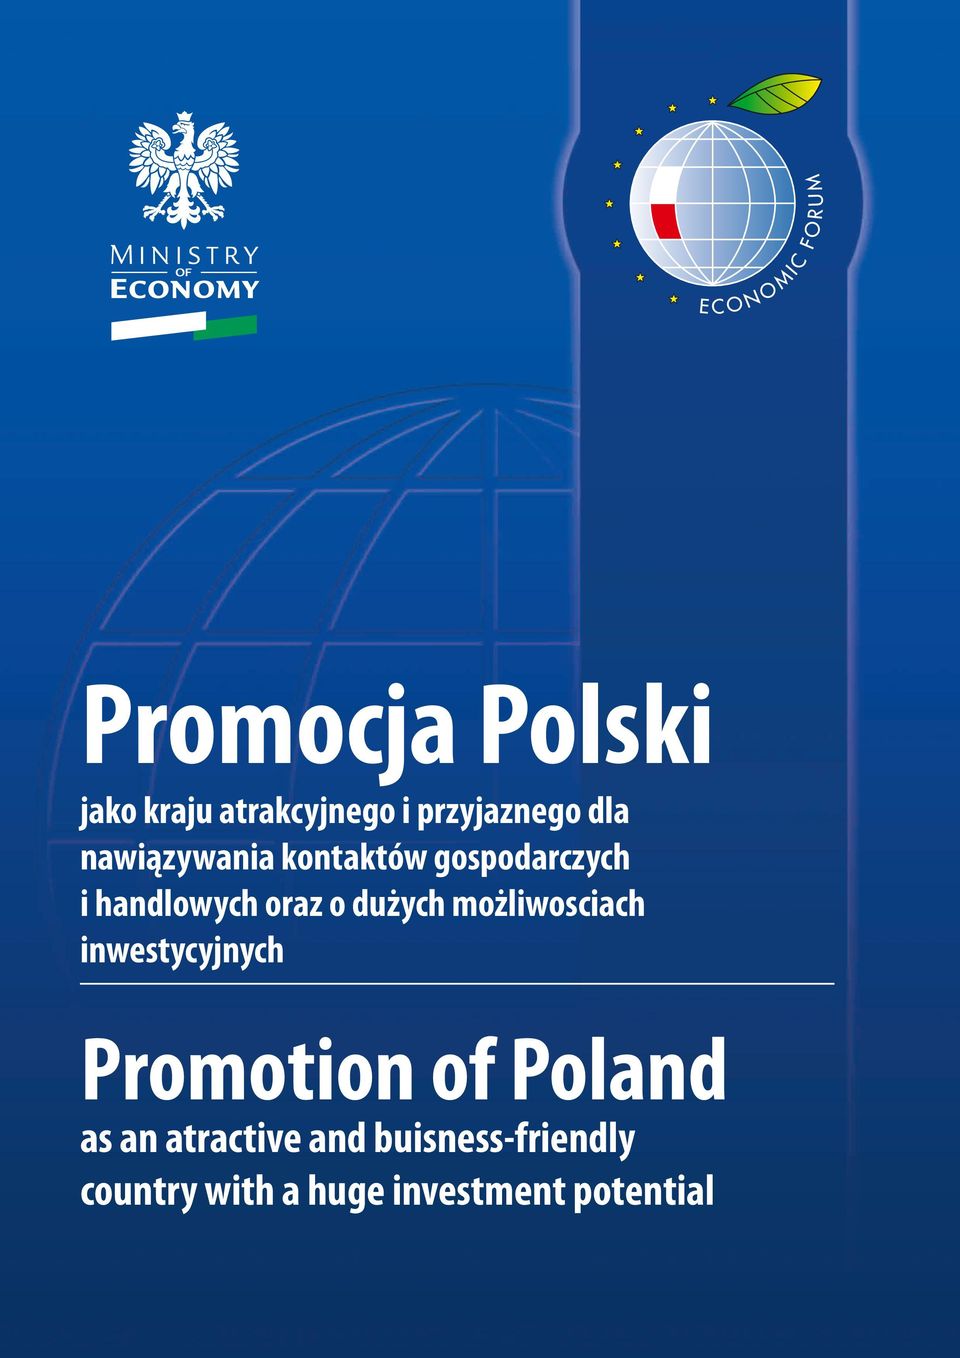 dużych możliwosciach inwestycyjnych Promotion of Poland as an